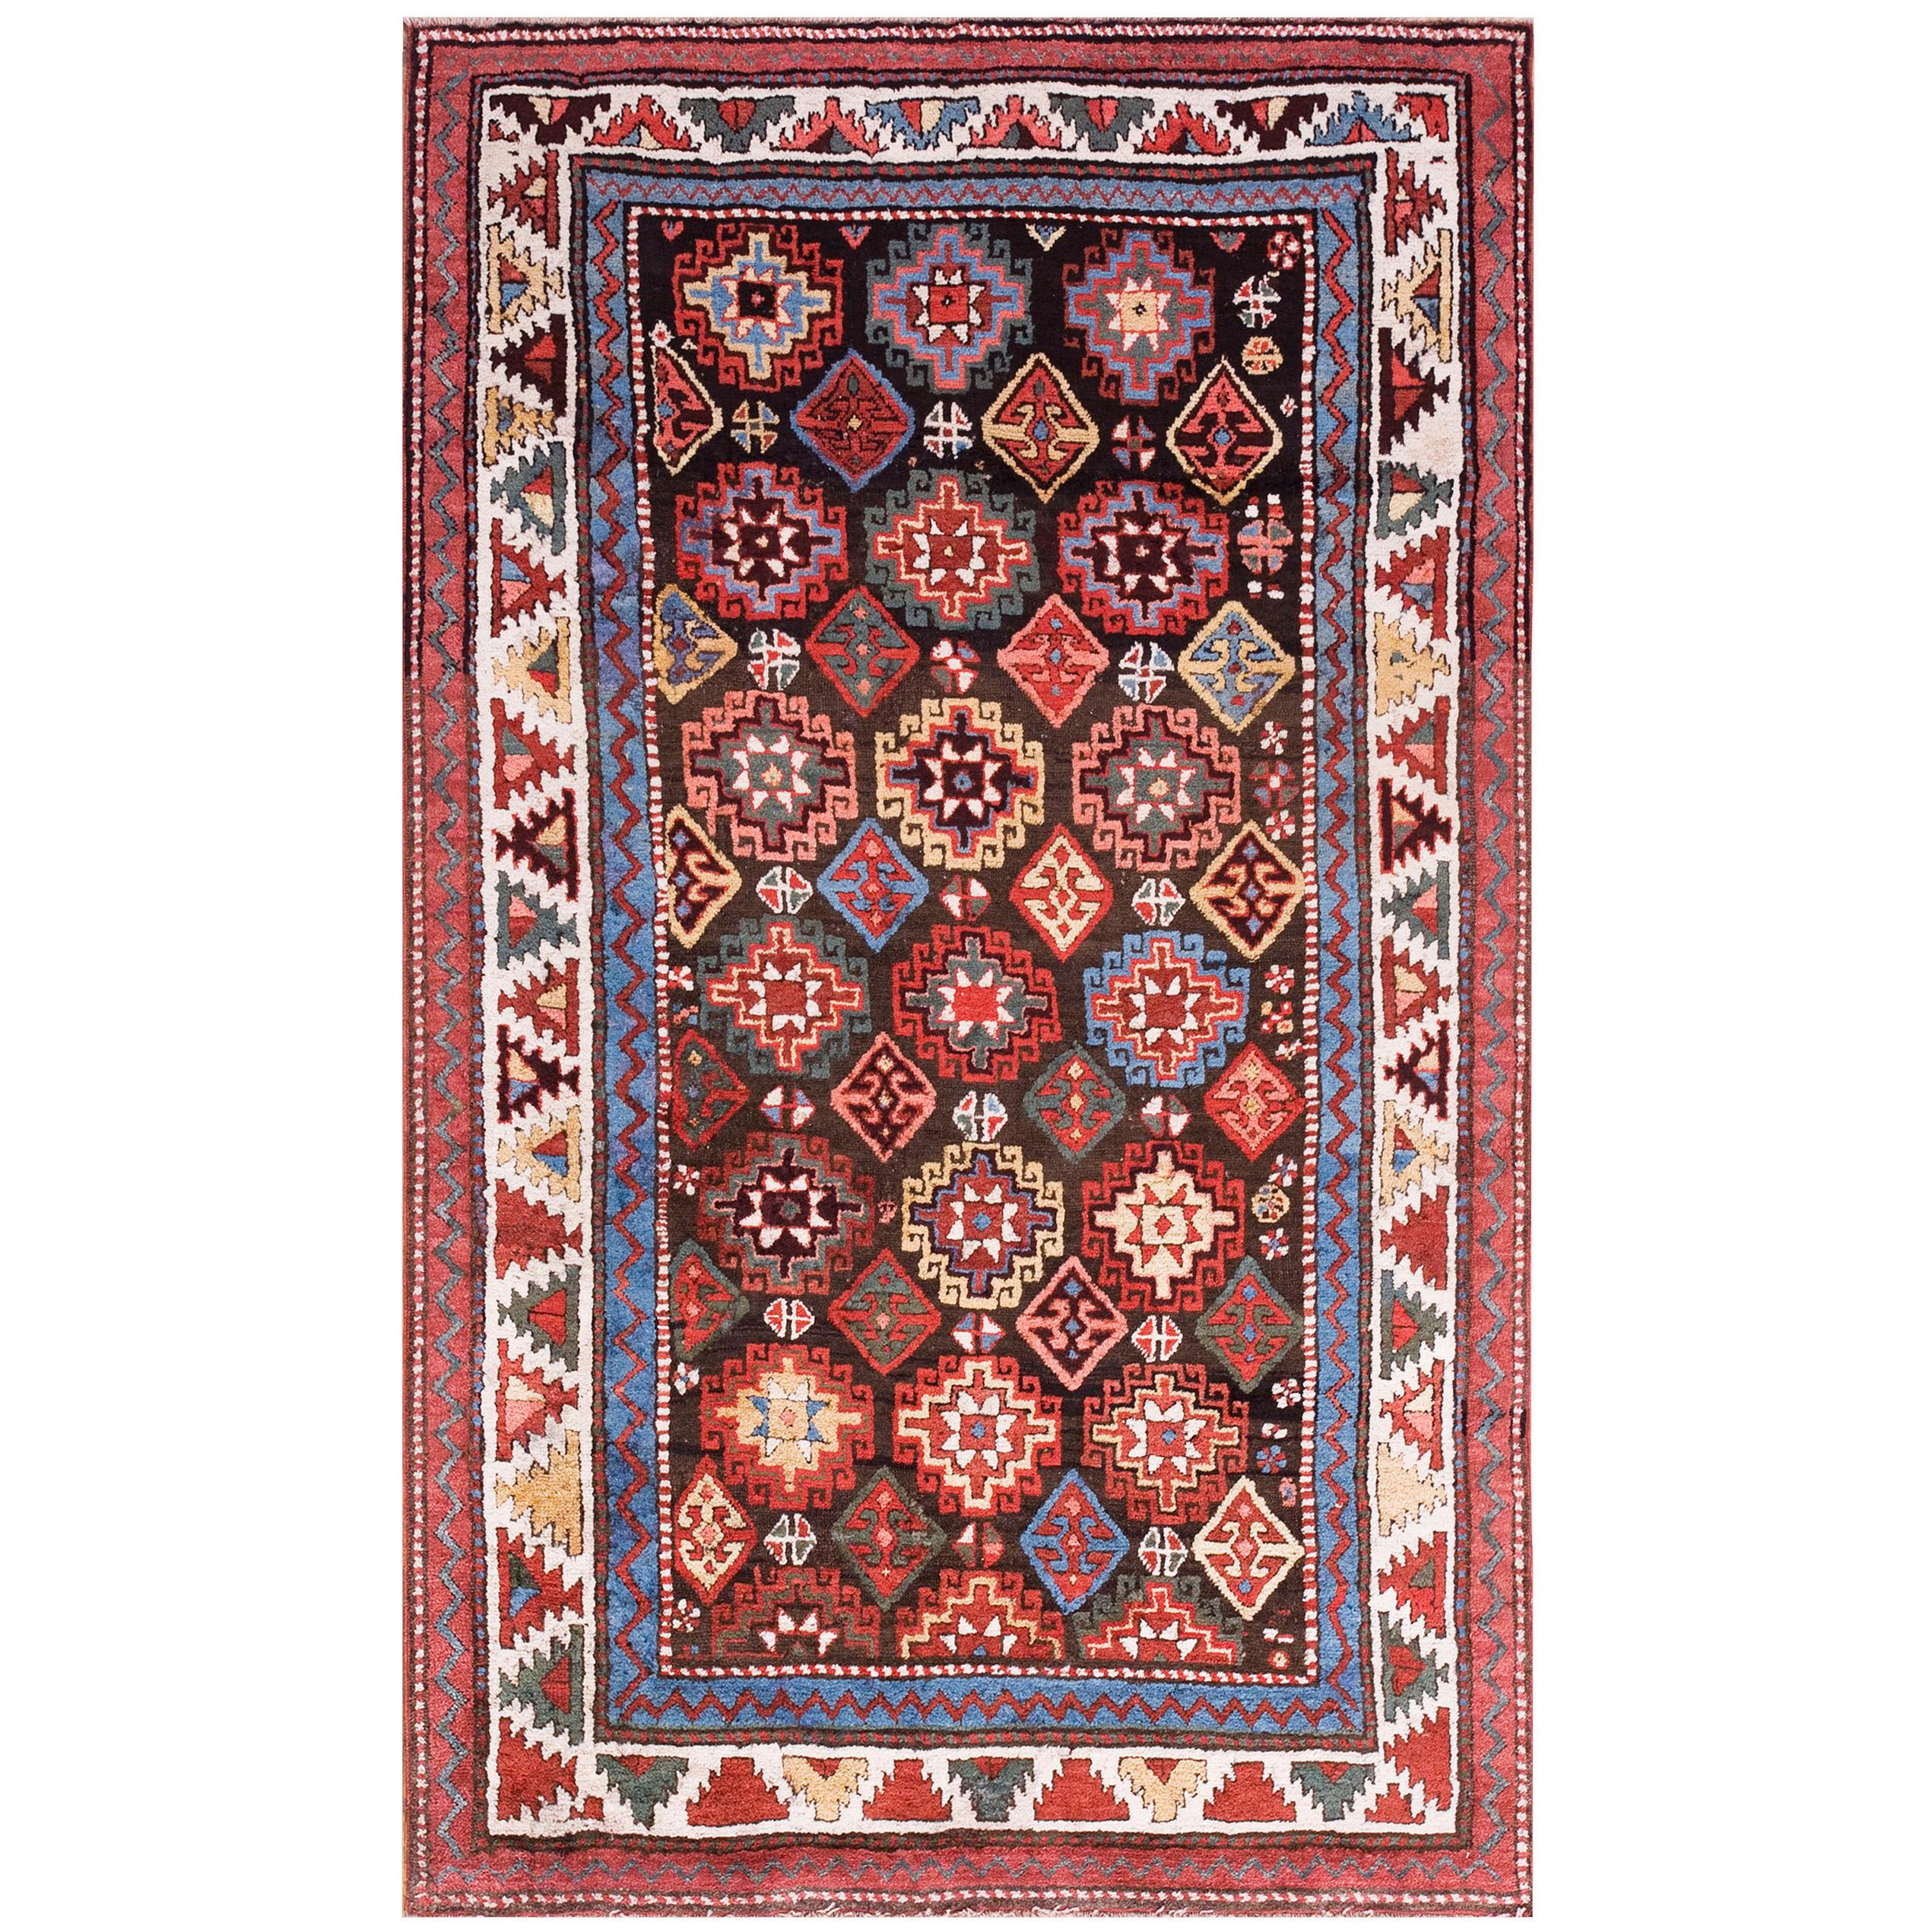 Late 19th Century Caucasian Kazak Carpet ( 3'6" X 6'3" - 106 X 190 cm )